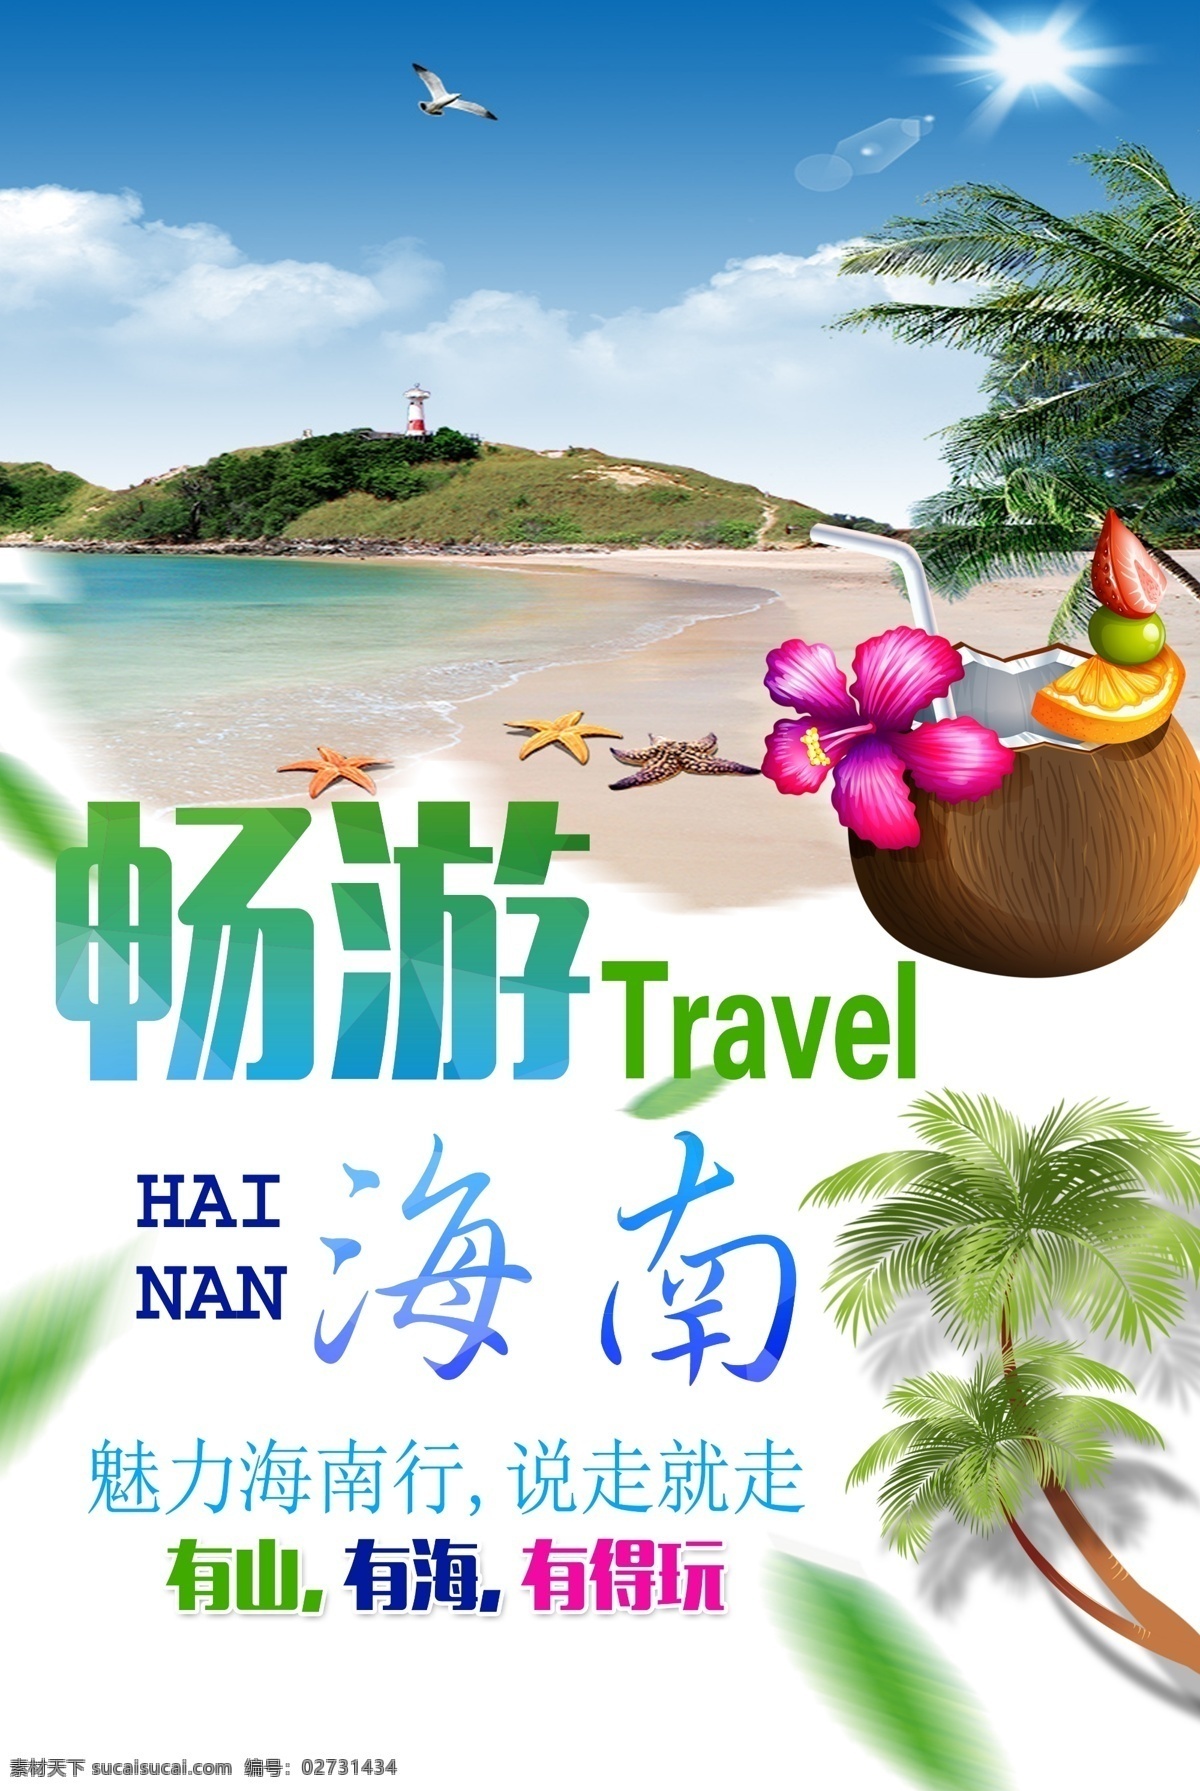 海南旅游海报 旅游 出游 畅游 畅游海南 有山 有海 有得玩 椰子汁 椰子 椰子肉 椰子树 手绘